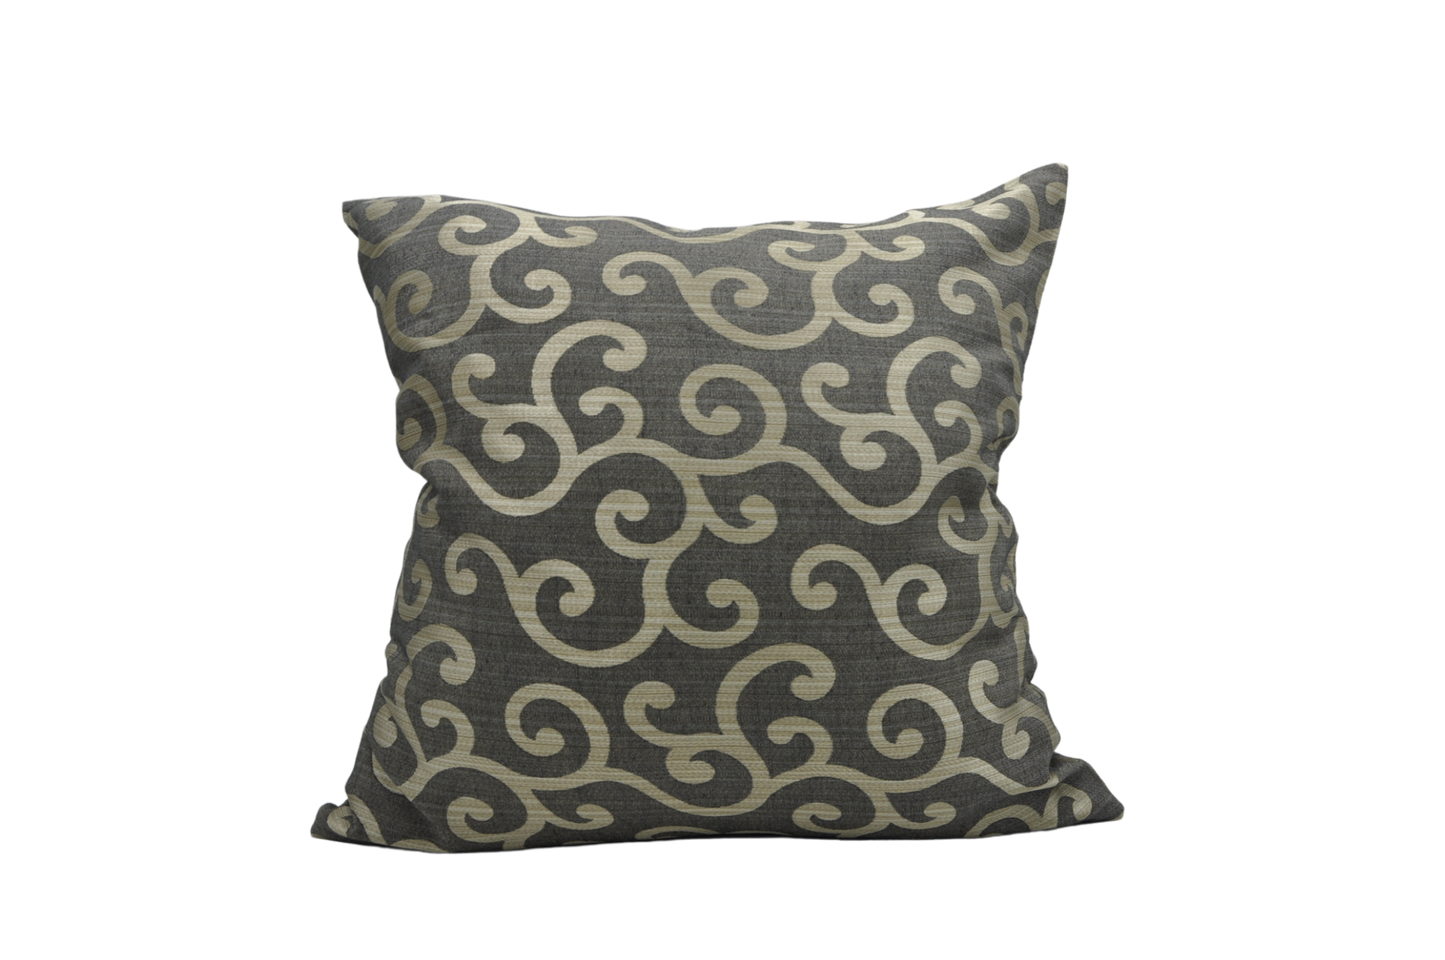 Beige Swirls - Sustainable Décor Pillows